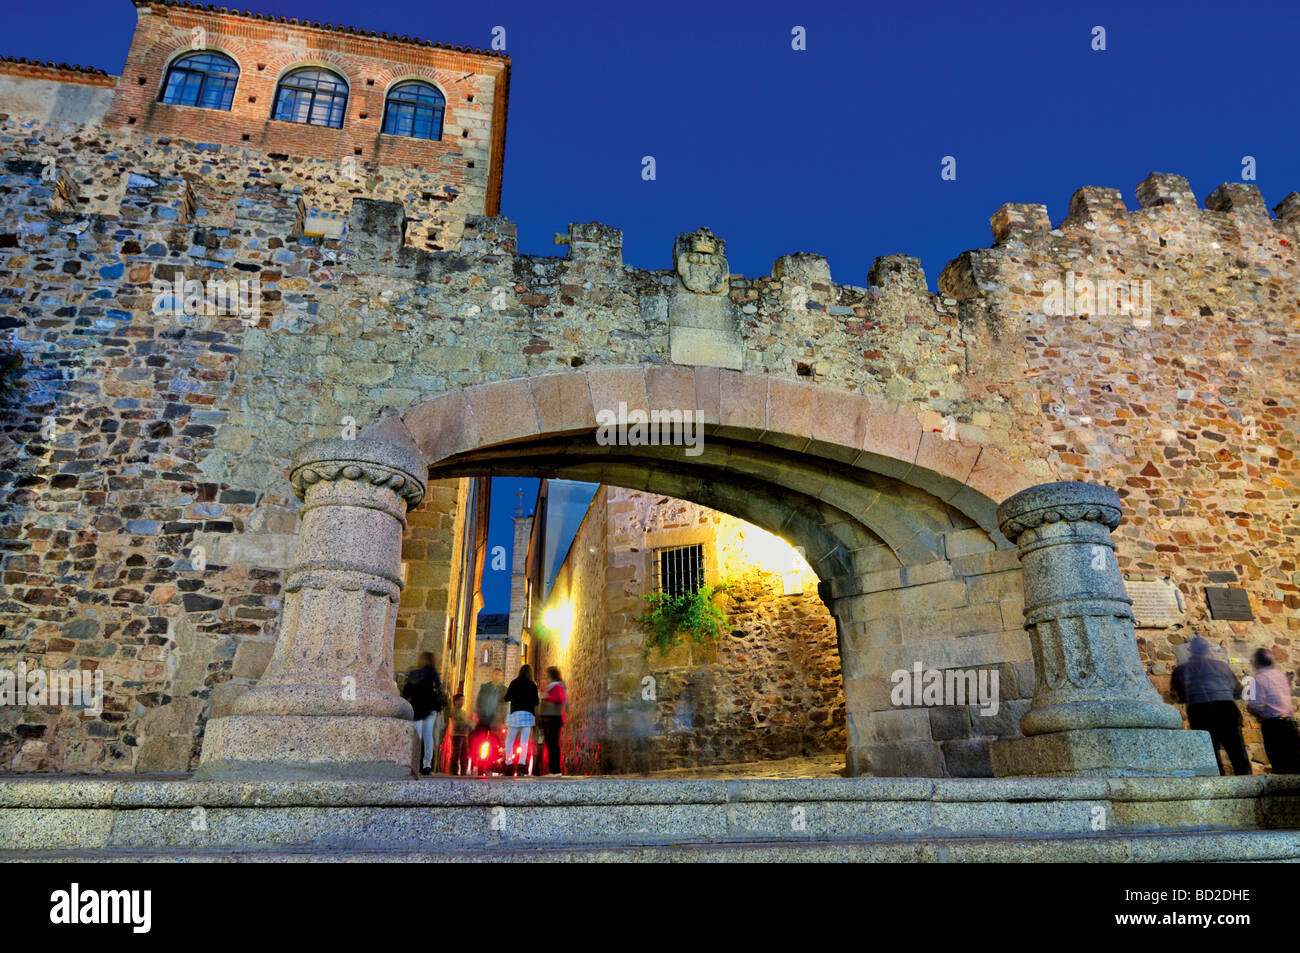 España, Cáceres: Arco de la estrella por la noche Foto de stock